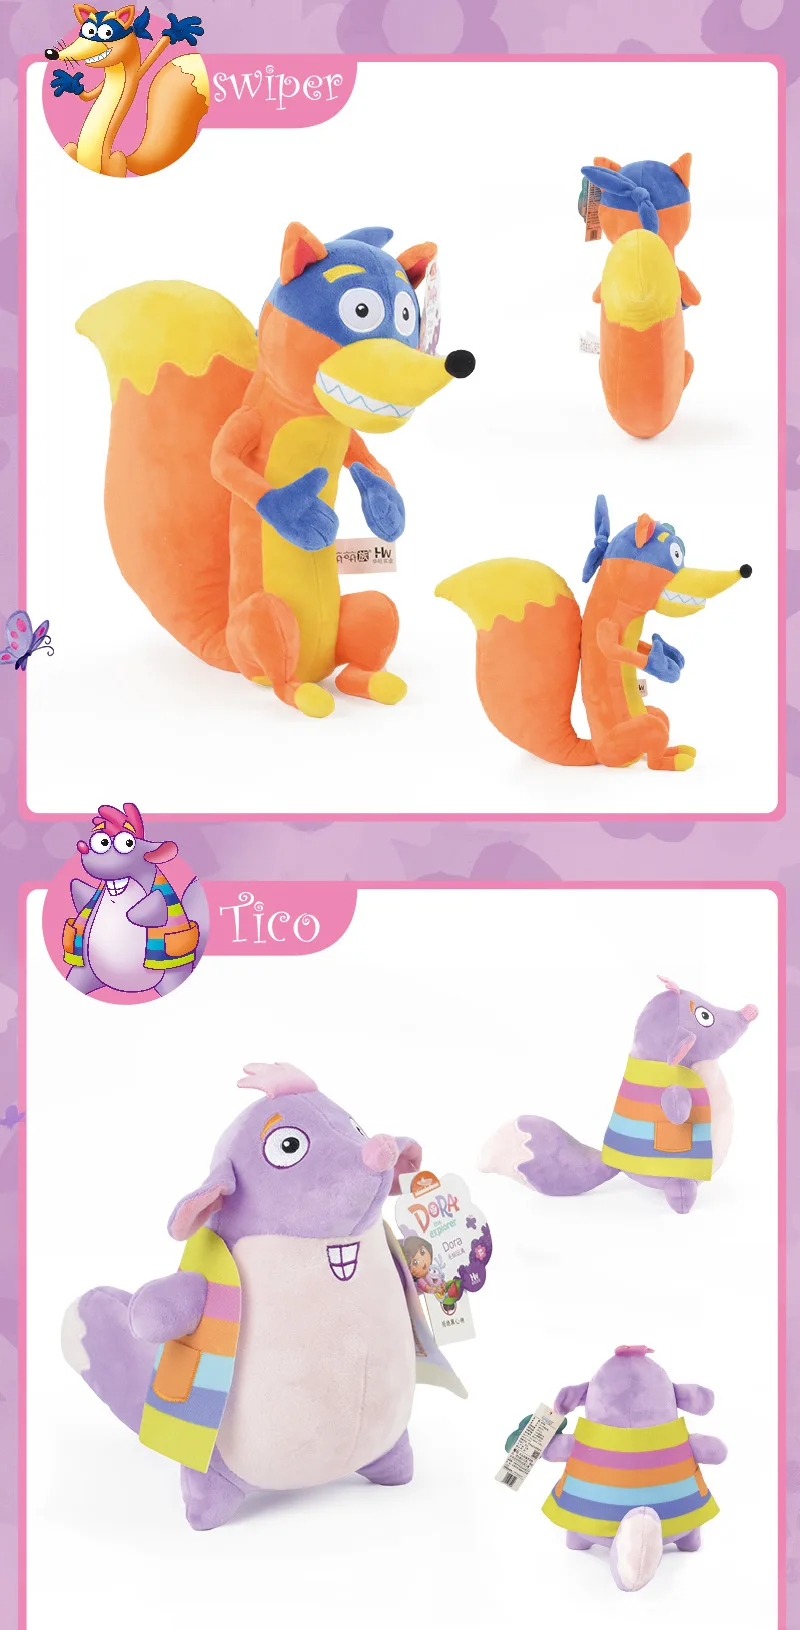 Dora the Explorer Plush Toys Dora Boots Isa Tico Swiper Soft Stuffed Dolls Kids